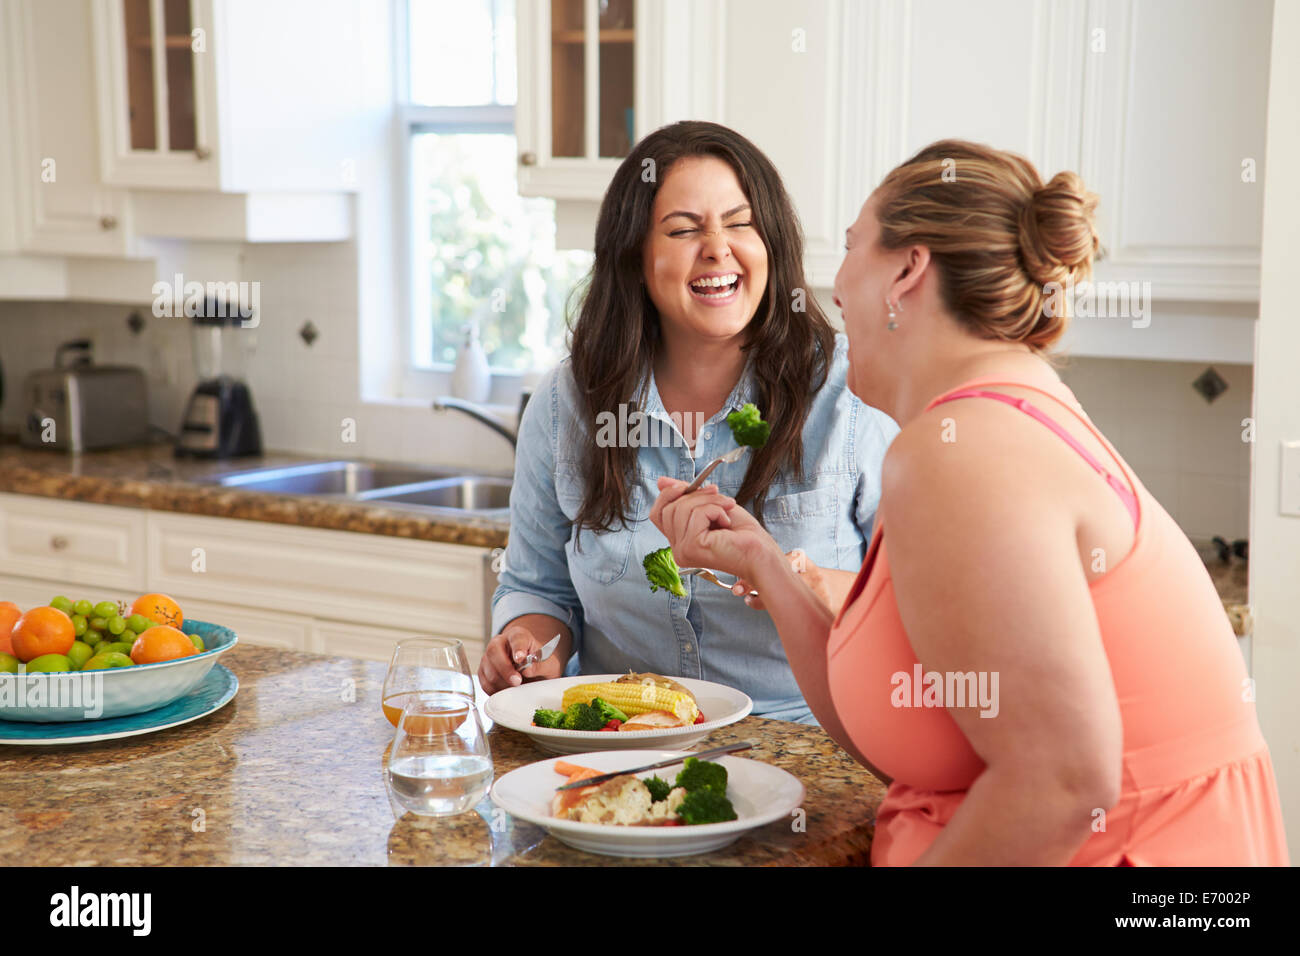 Deux femmes en surpoids sur l'alimentation Manger sain repas en cuisine Banque D'Images